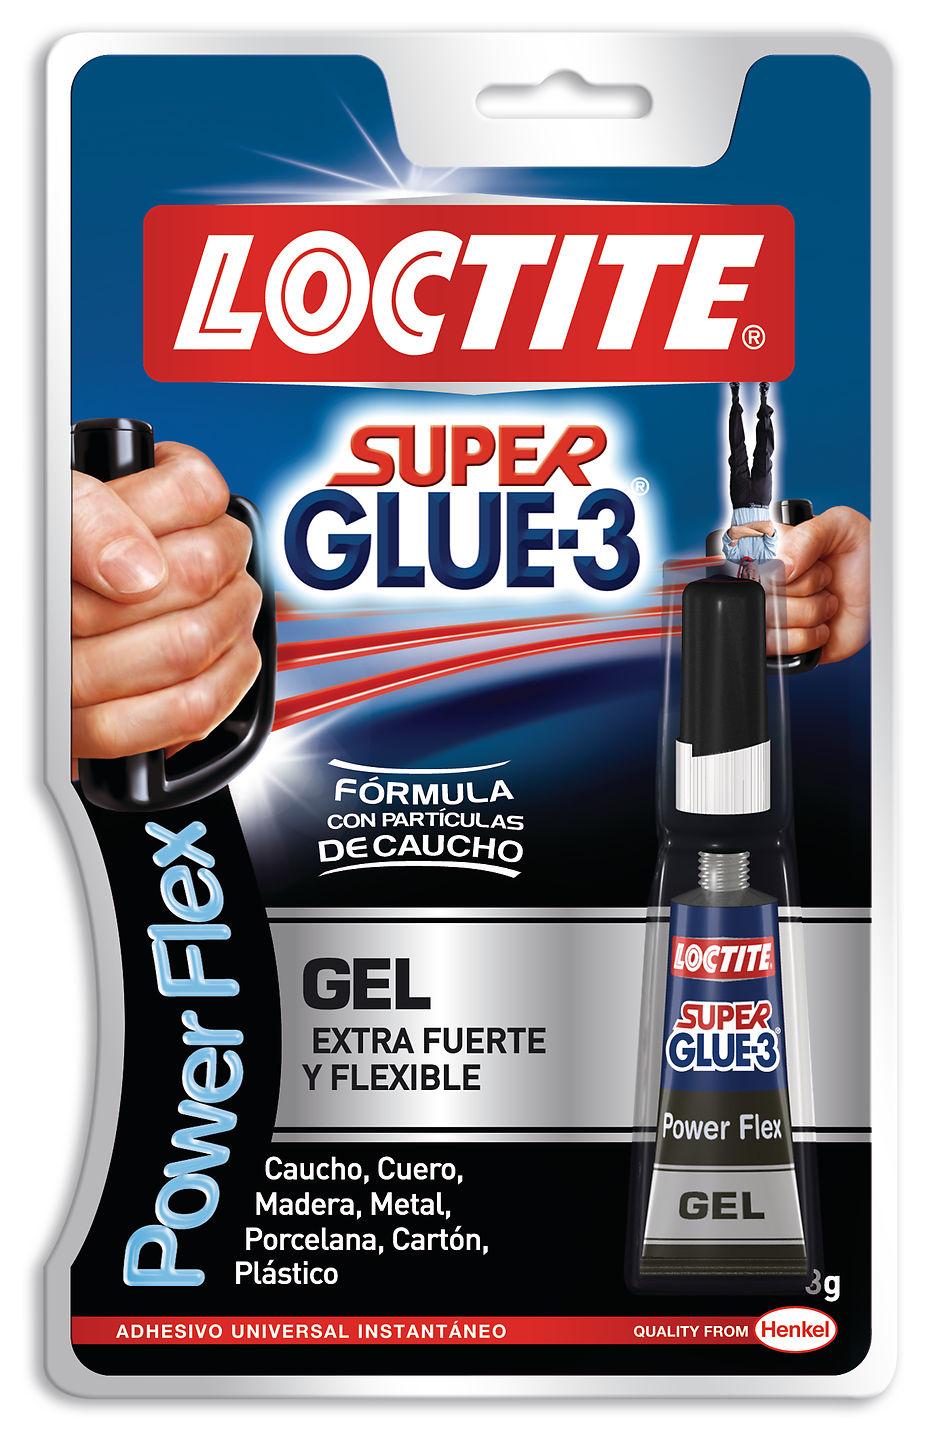 Foto Loctite Pegamento Super Glue-3 Power Flex foto 89564